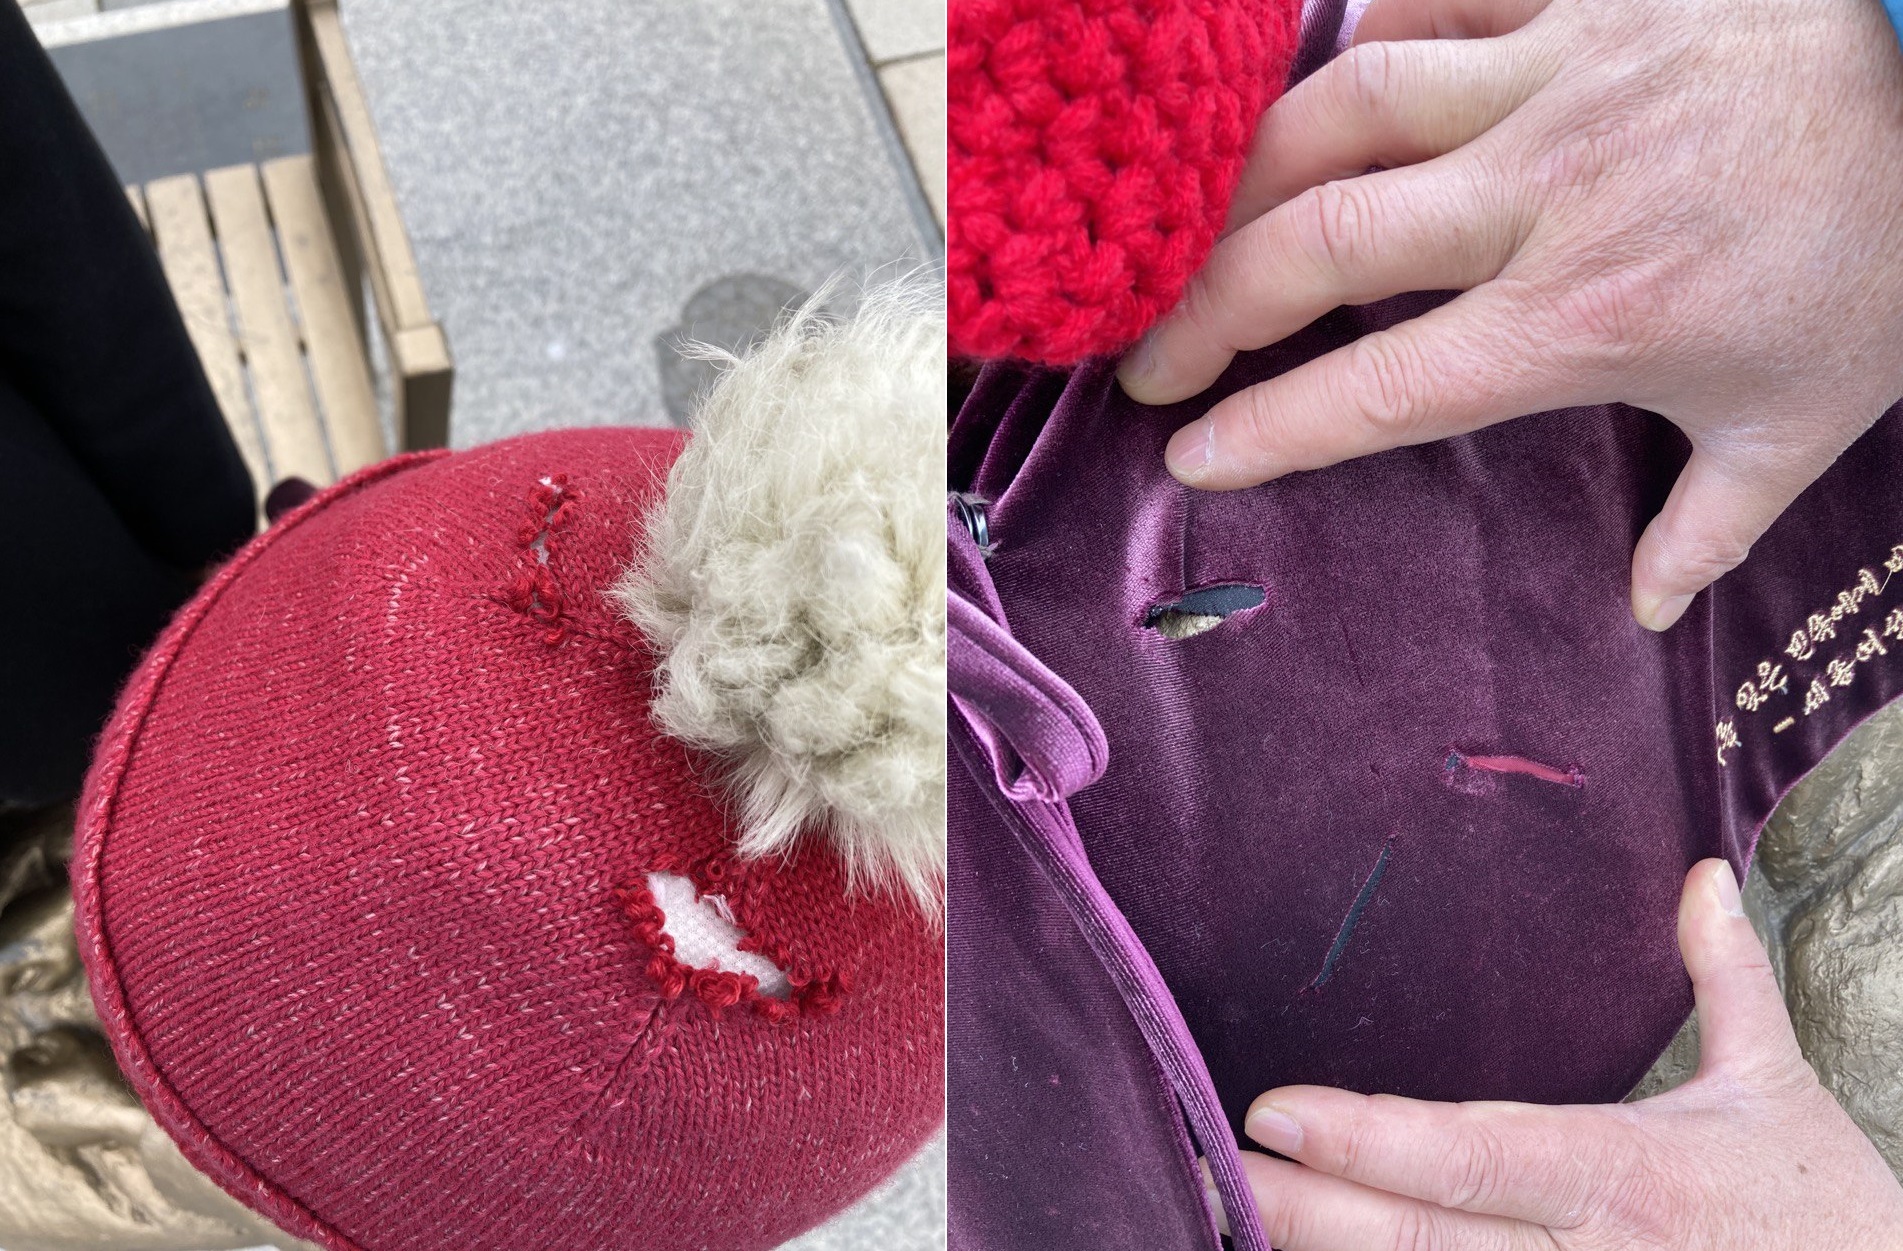 세종시 호수공원에 설치된 ‘평화의 소녀상’에 겨울나기를 위해 입혀놓은 모자(왼쪽)와 망토가 예리한 칼로 훼손된 것으로 보이는 정황이 발견됐다. 세종참여자치시민연대 제공